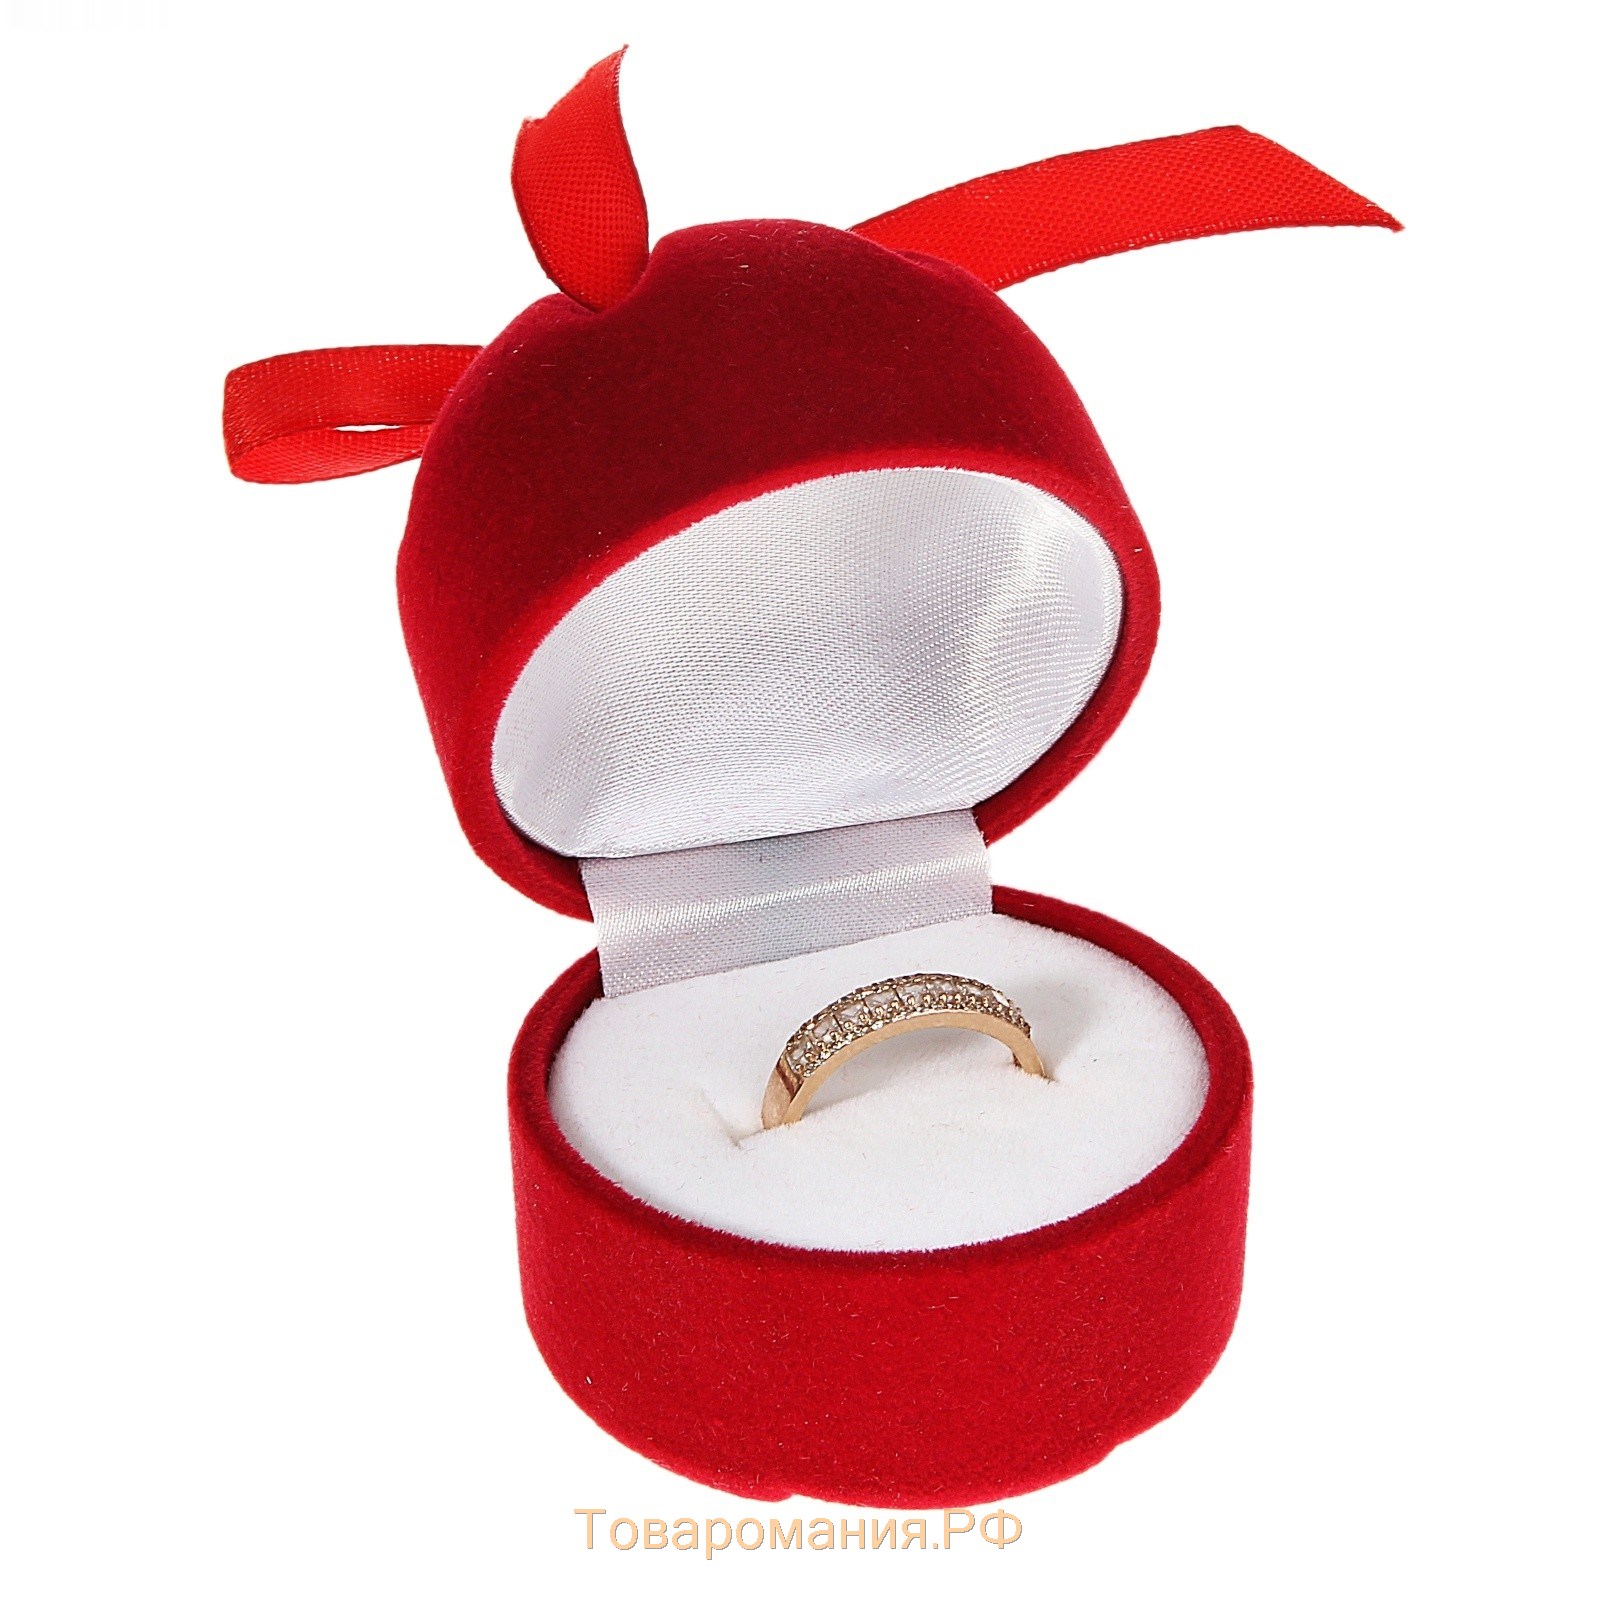 Футляр бархатный под кольцо "Подарочек", 5x5x6, цвет красный, вставка белая